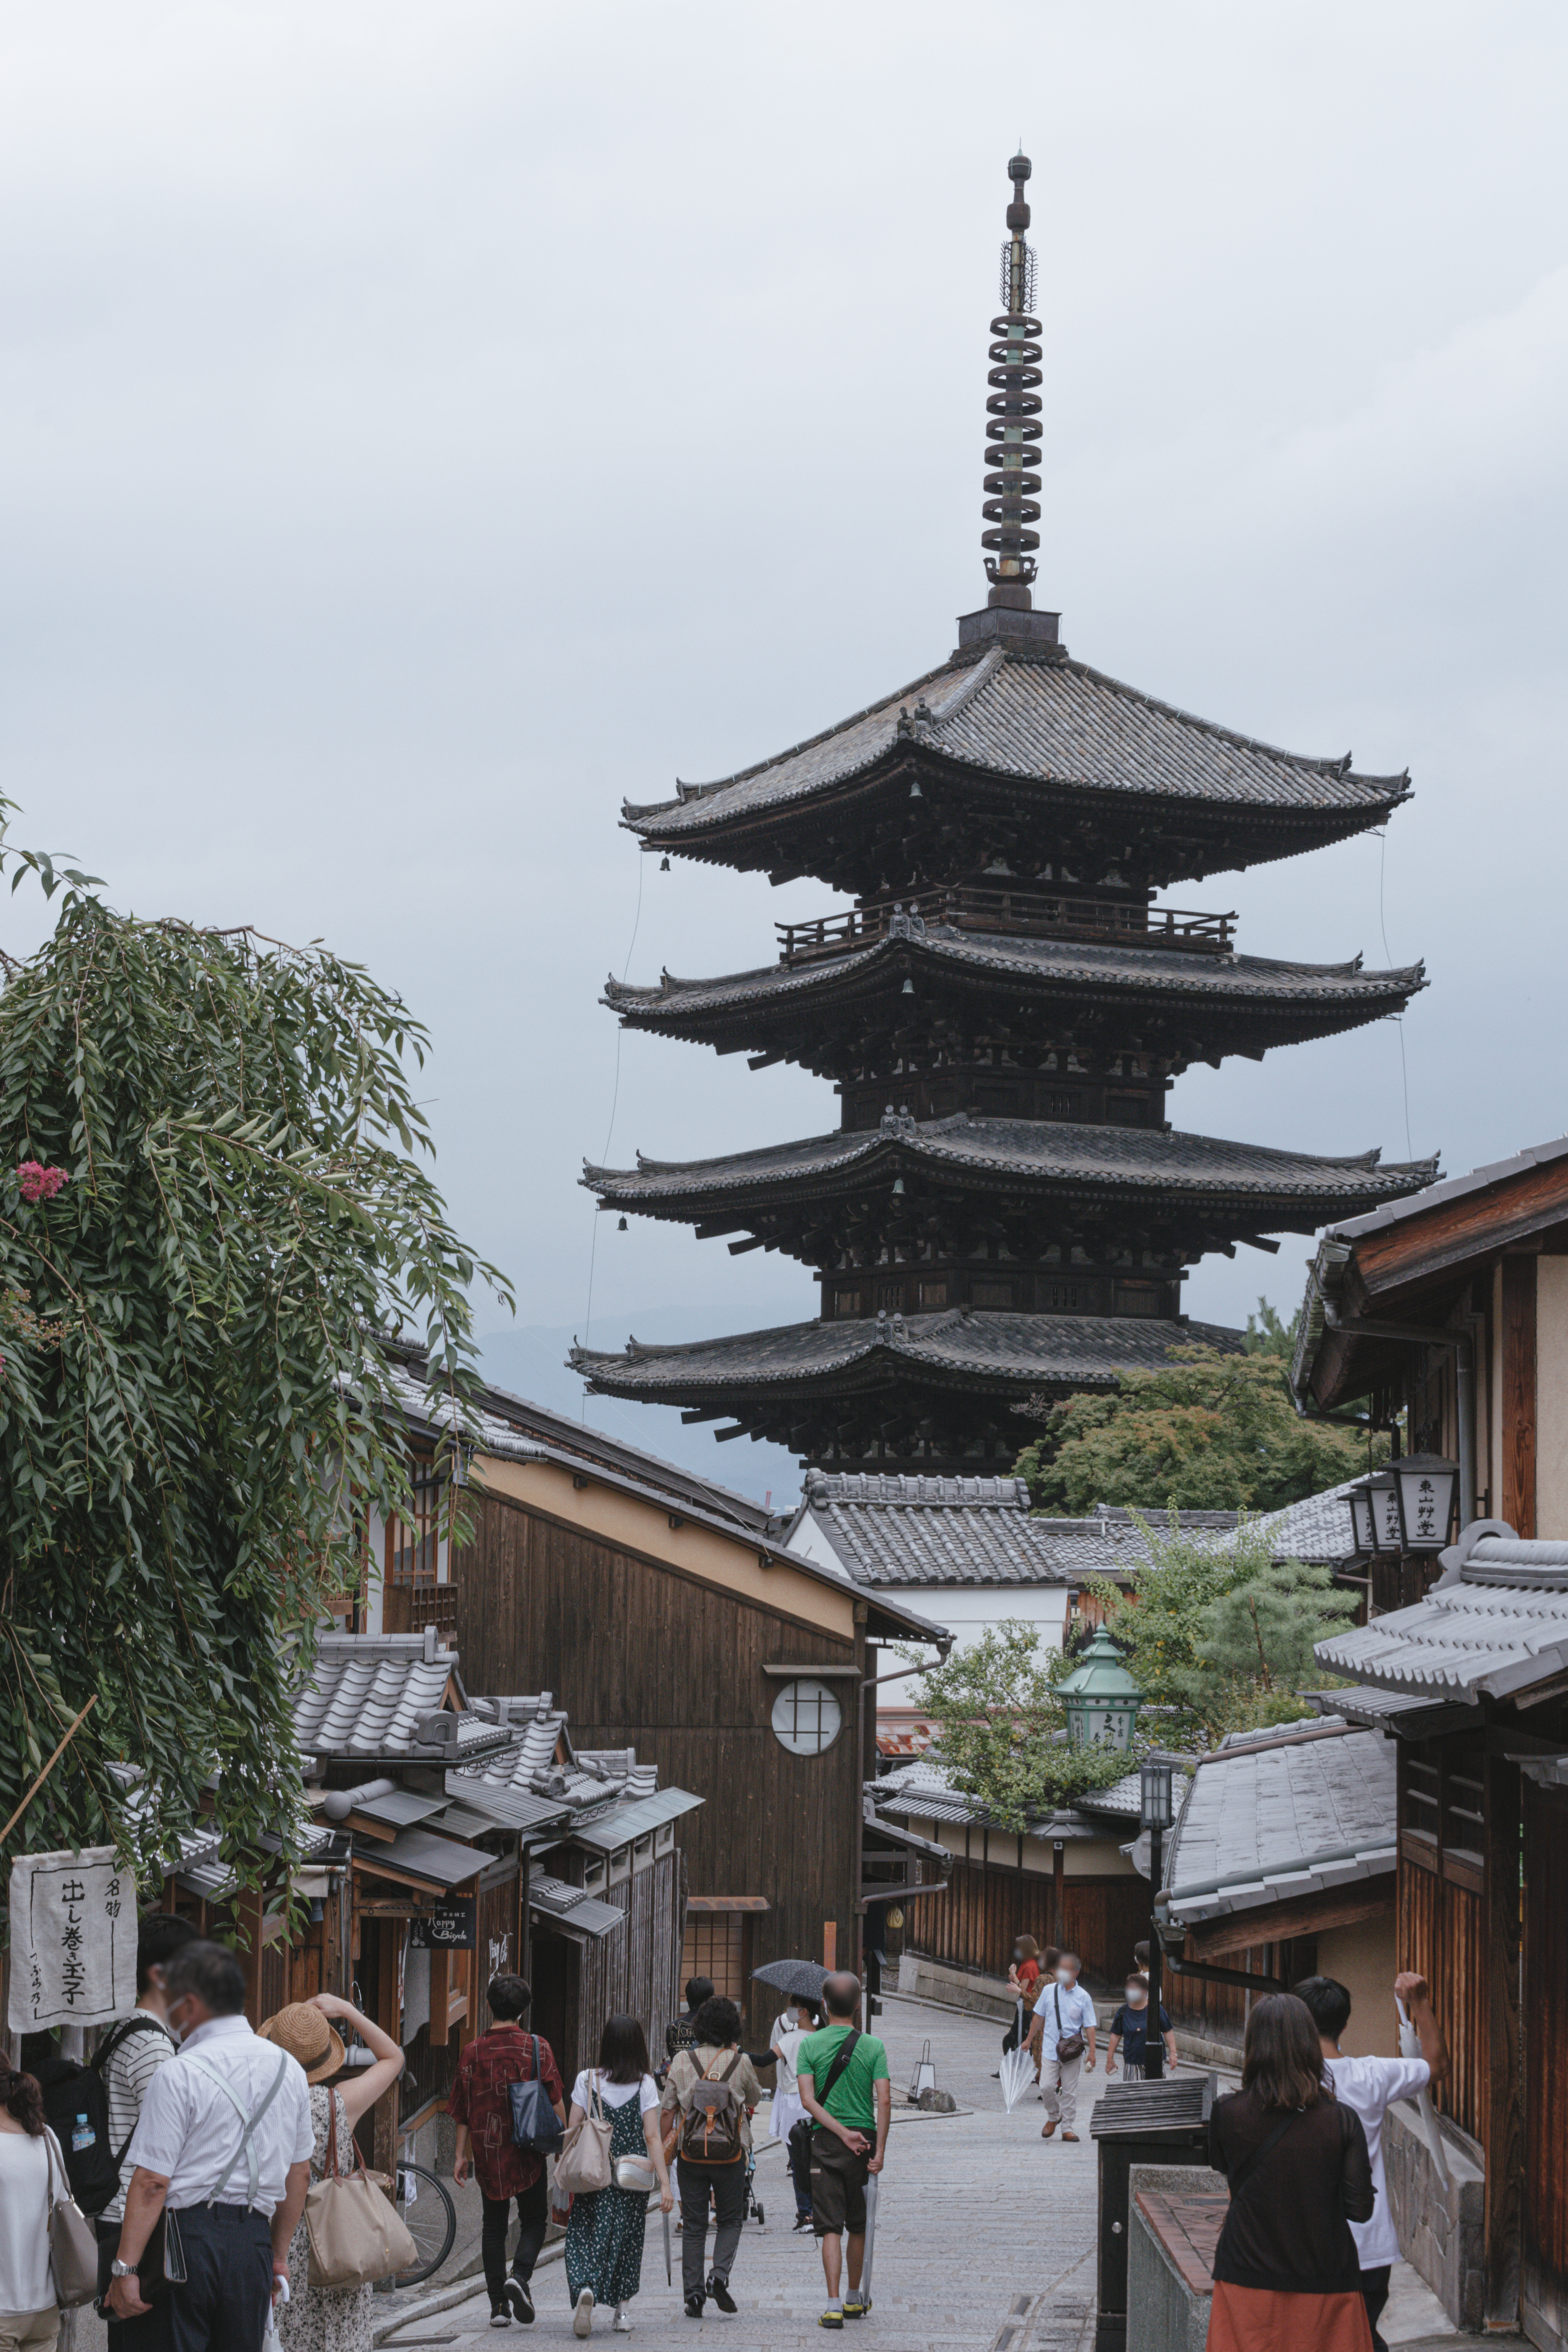 八坂の塔を見上げながら観光を楽しむ人々 京都 の写真素材 ぱくたそ